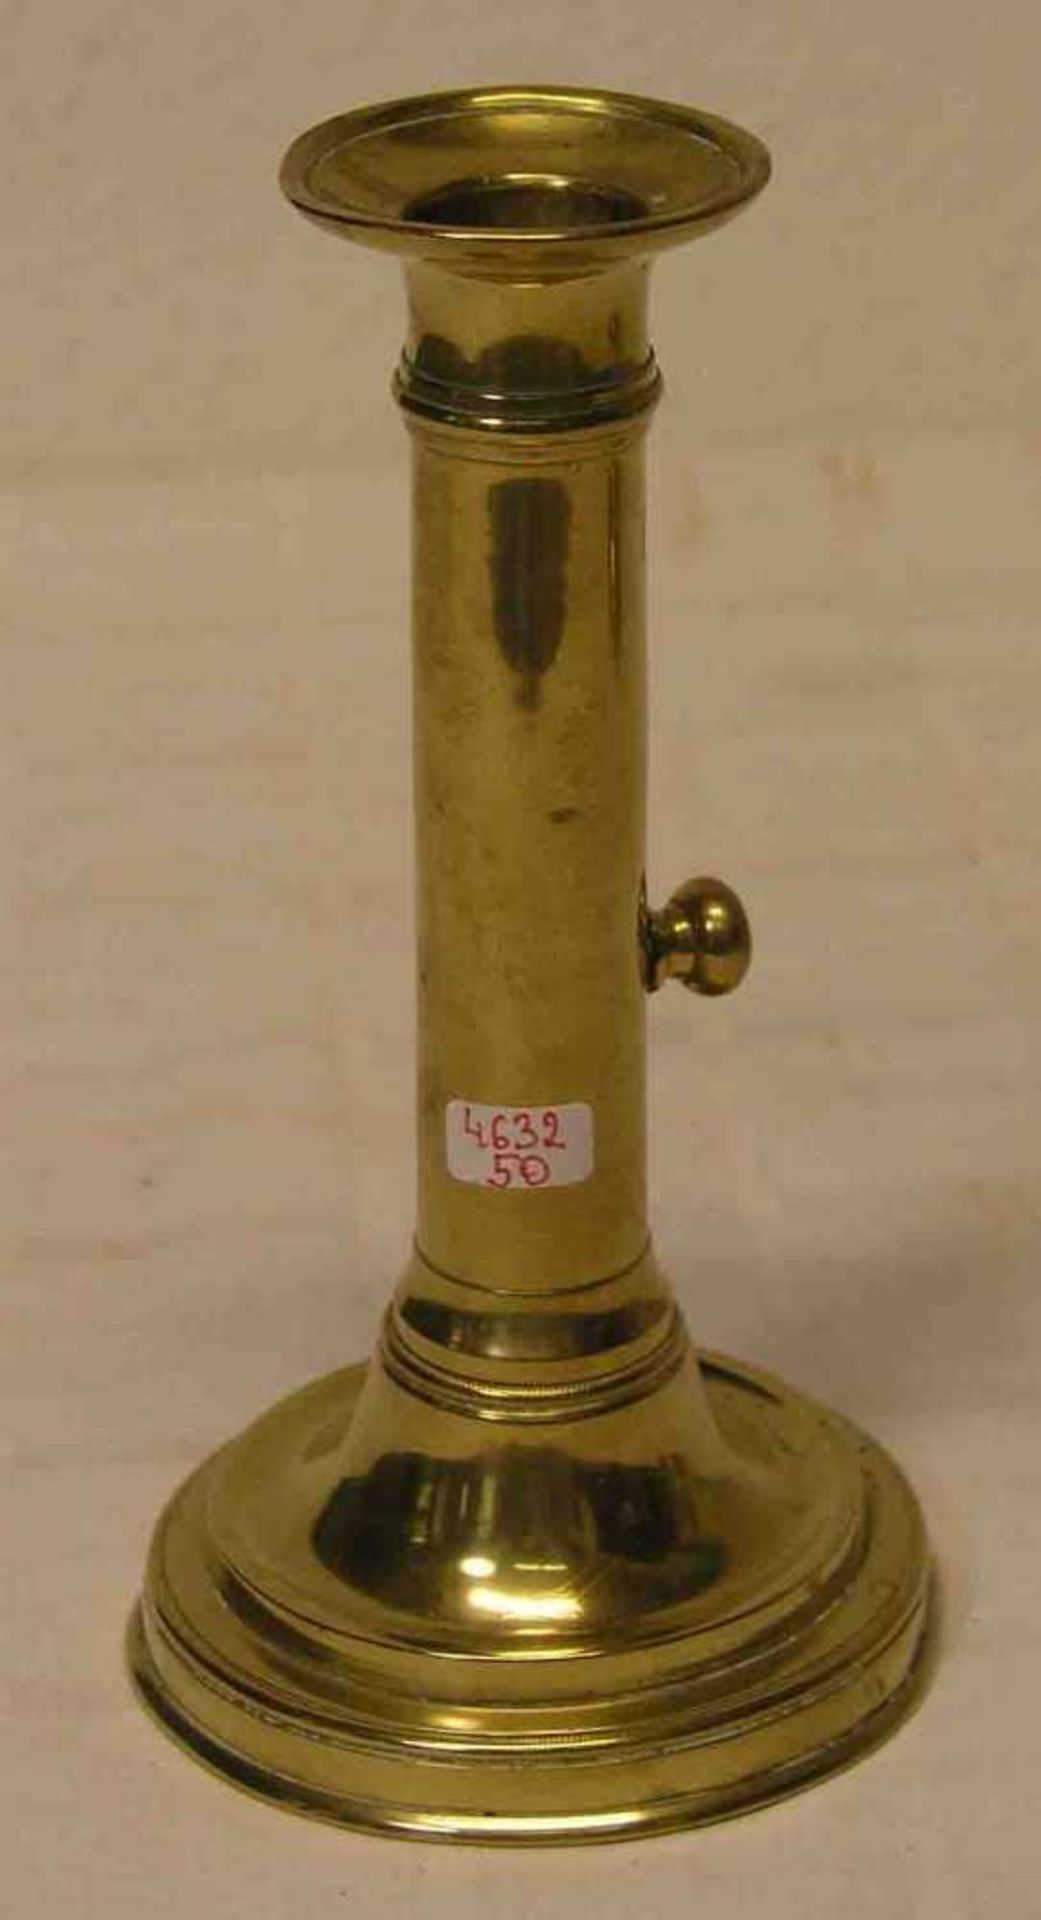 Schiebeleuchter, um 1840. Messing, Höhe: 18,5cm; Gebrauchsspuren.